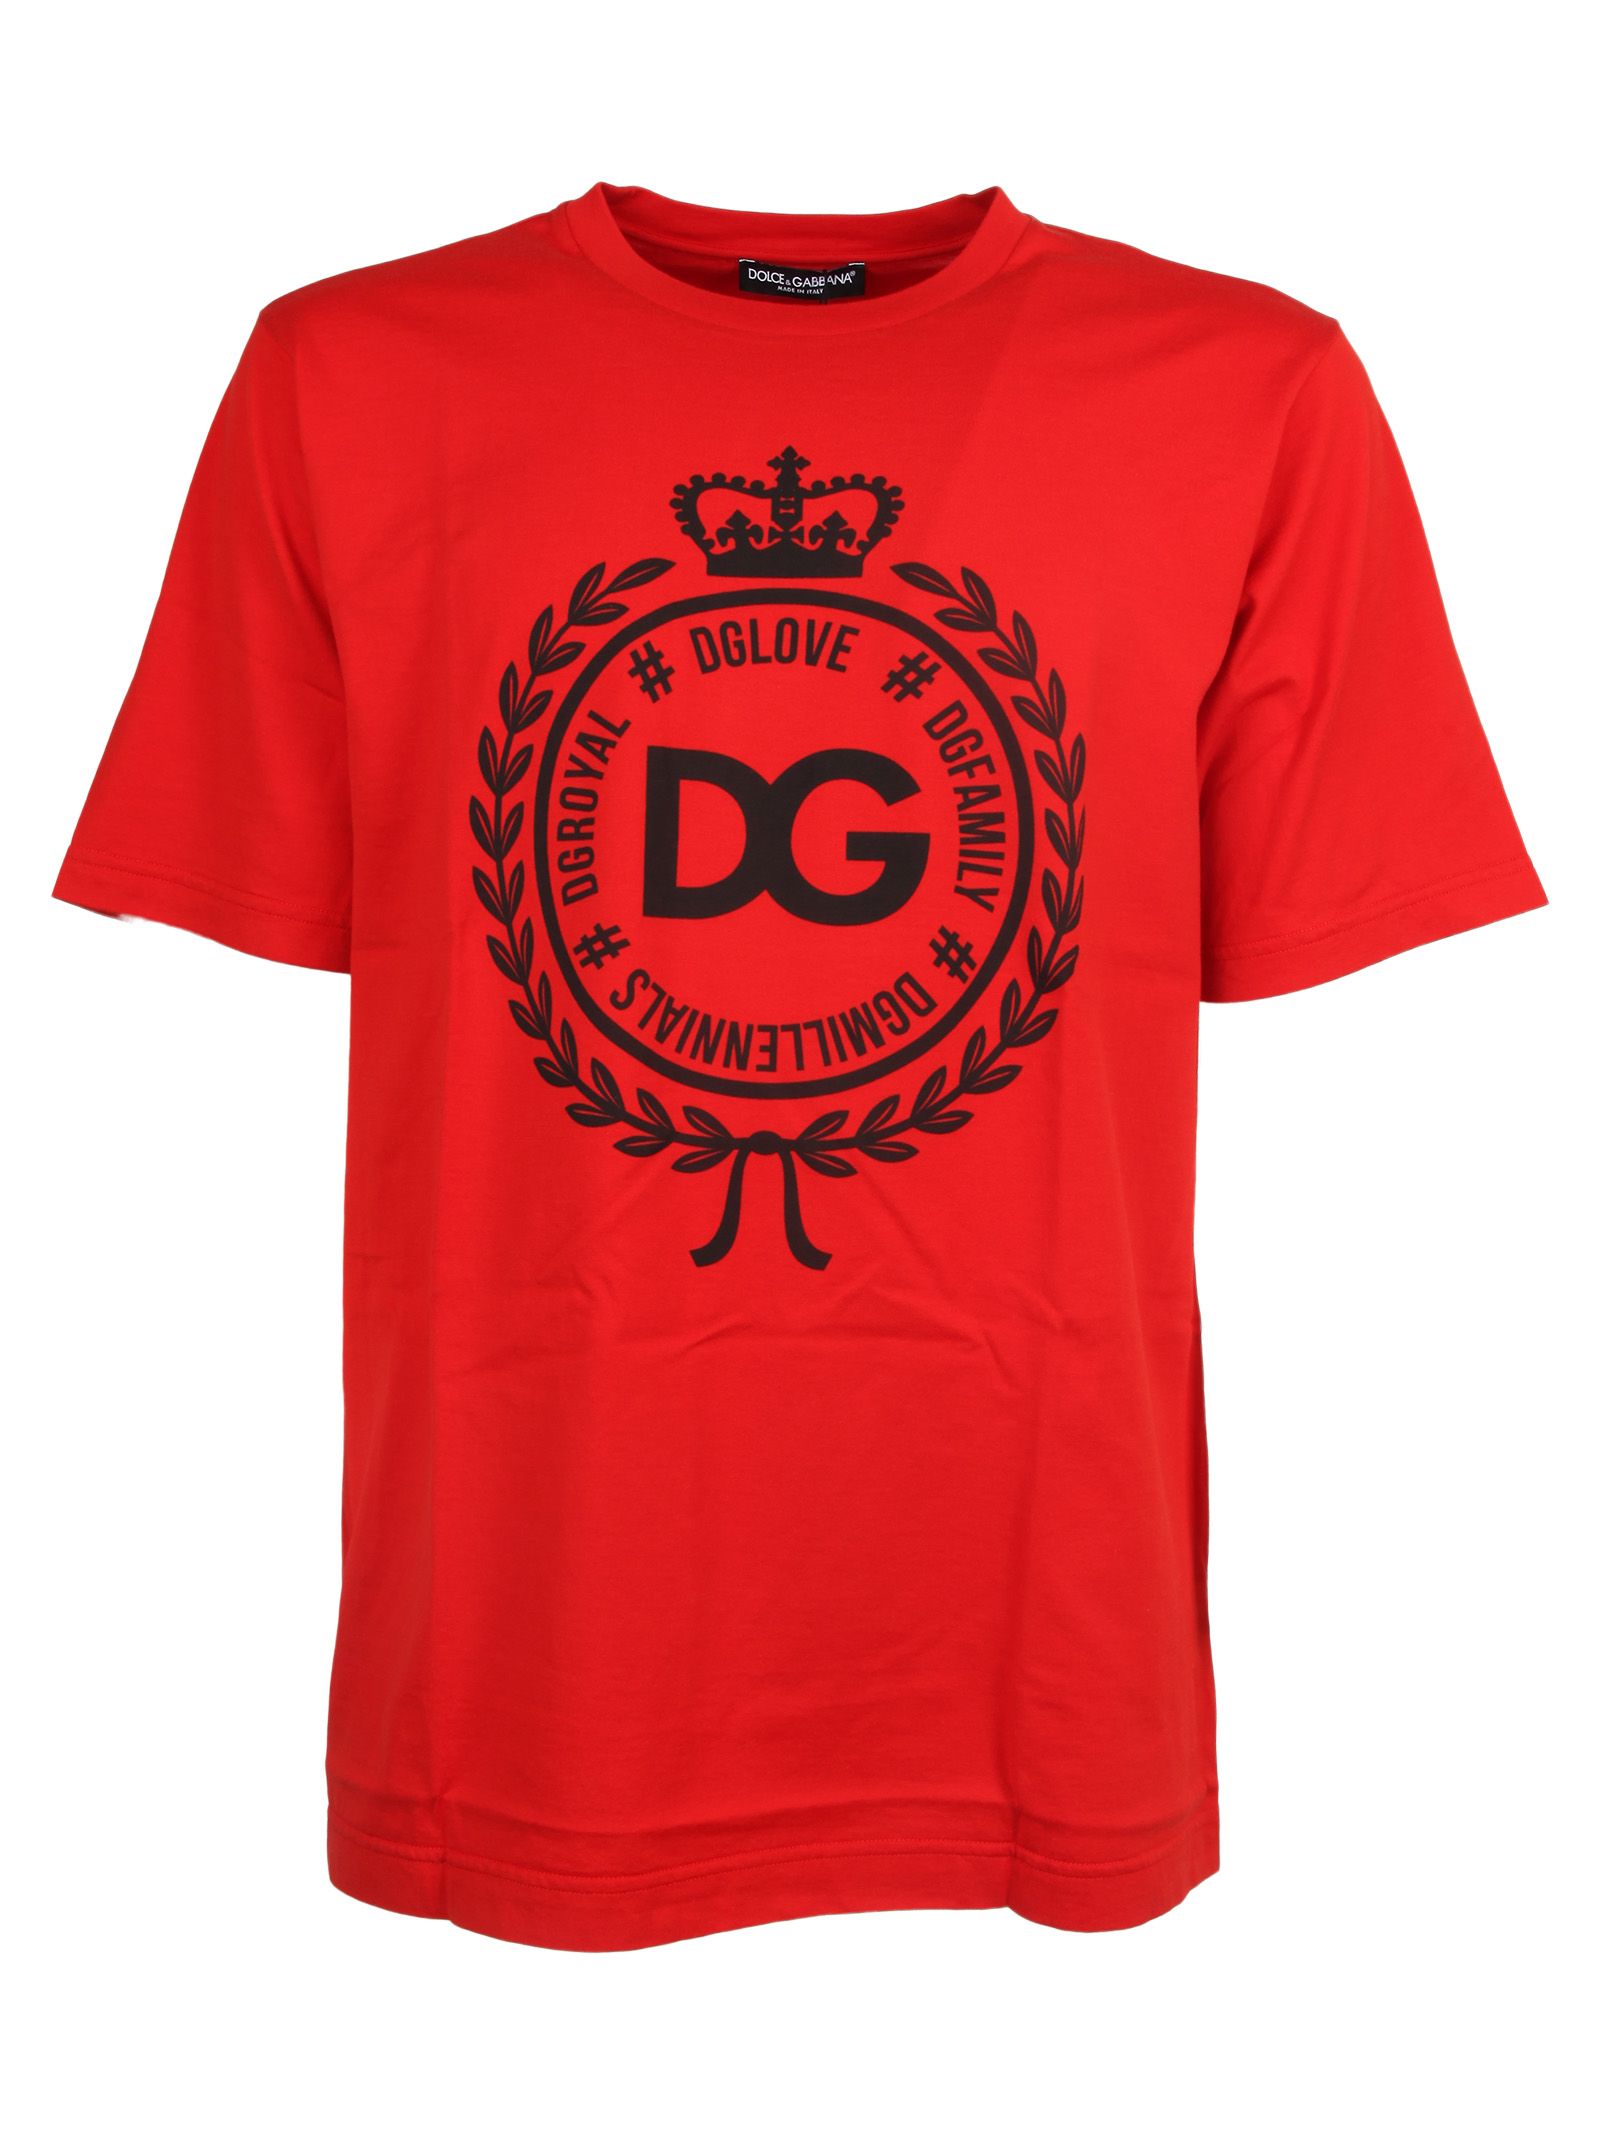 Dolce & Gabbana Dolce & Gabbana Dg Crest Logo T-shirt - Arancio ...